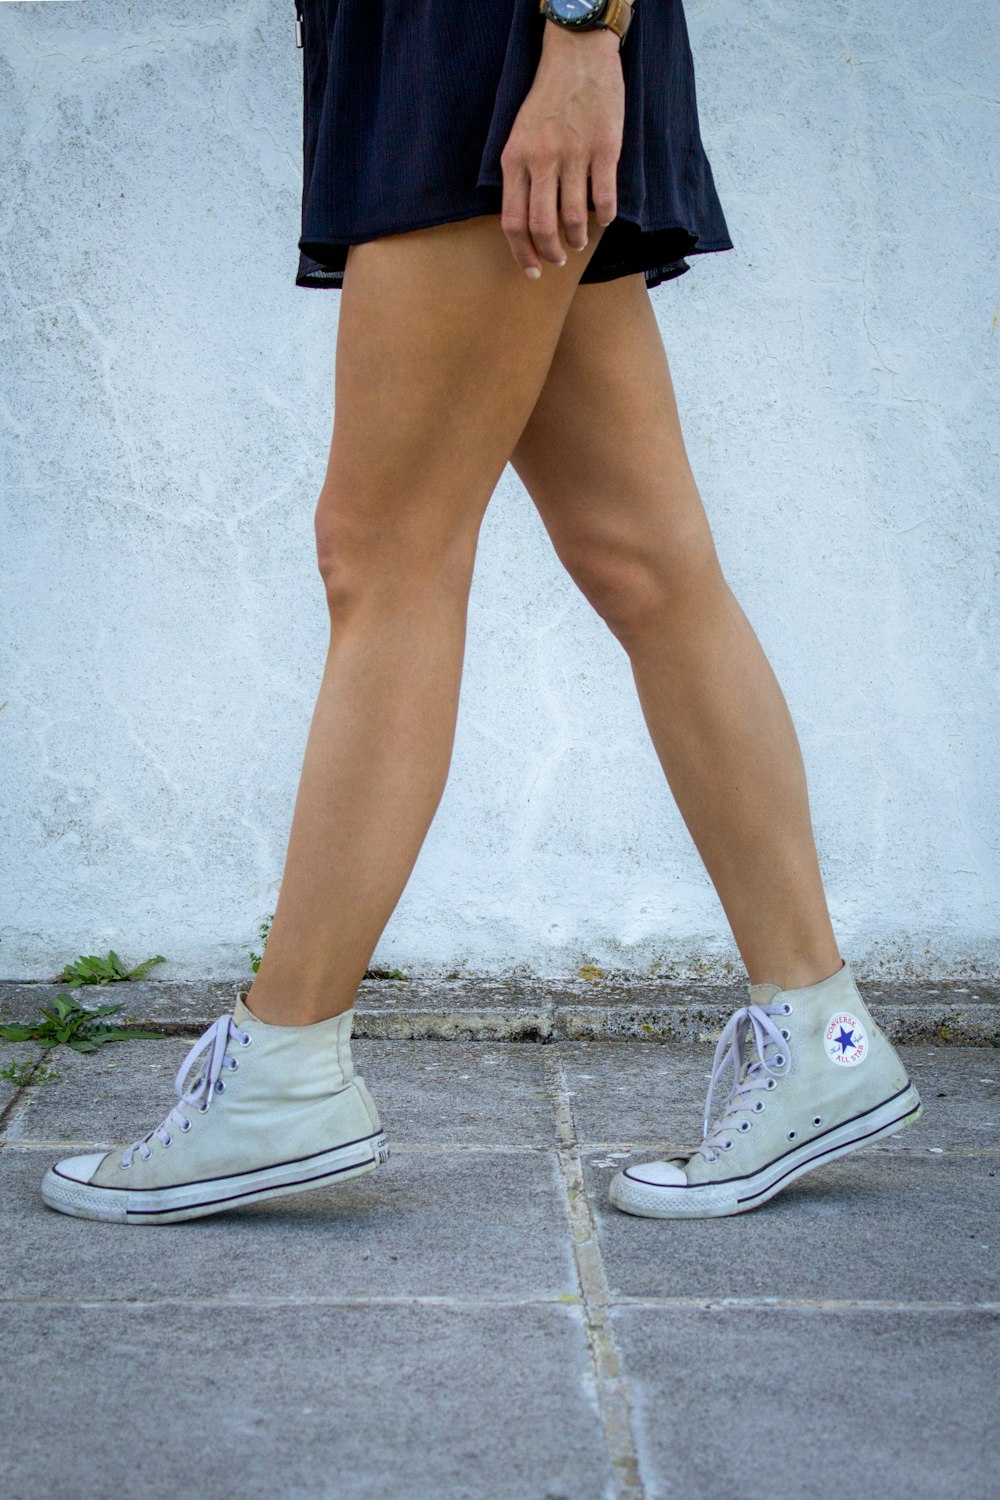 Una mujer caminando por una acera con zapatos tenis